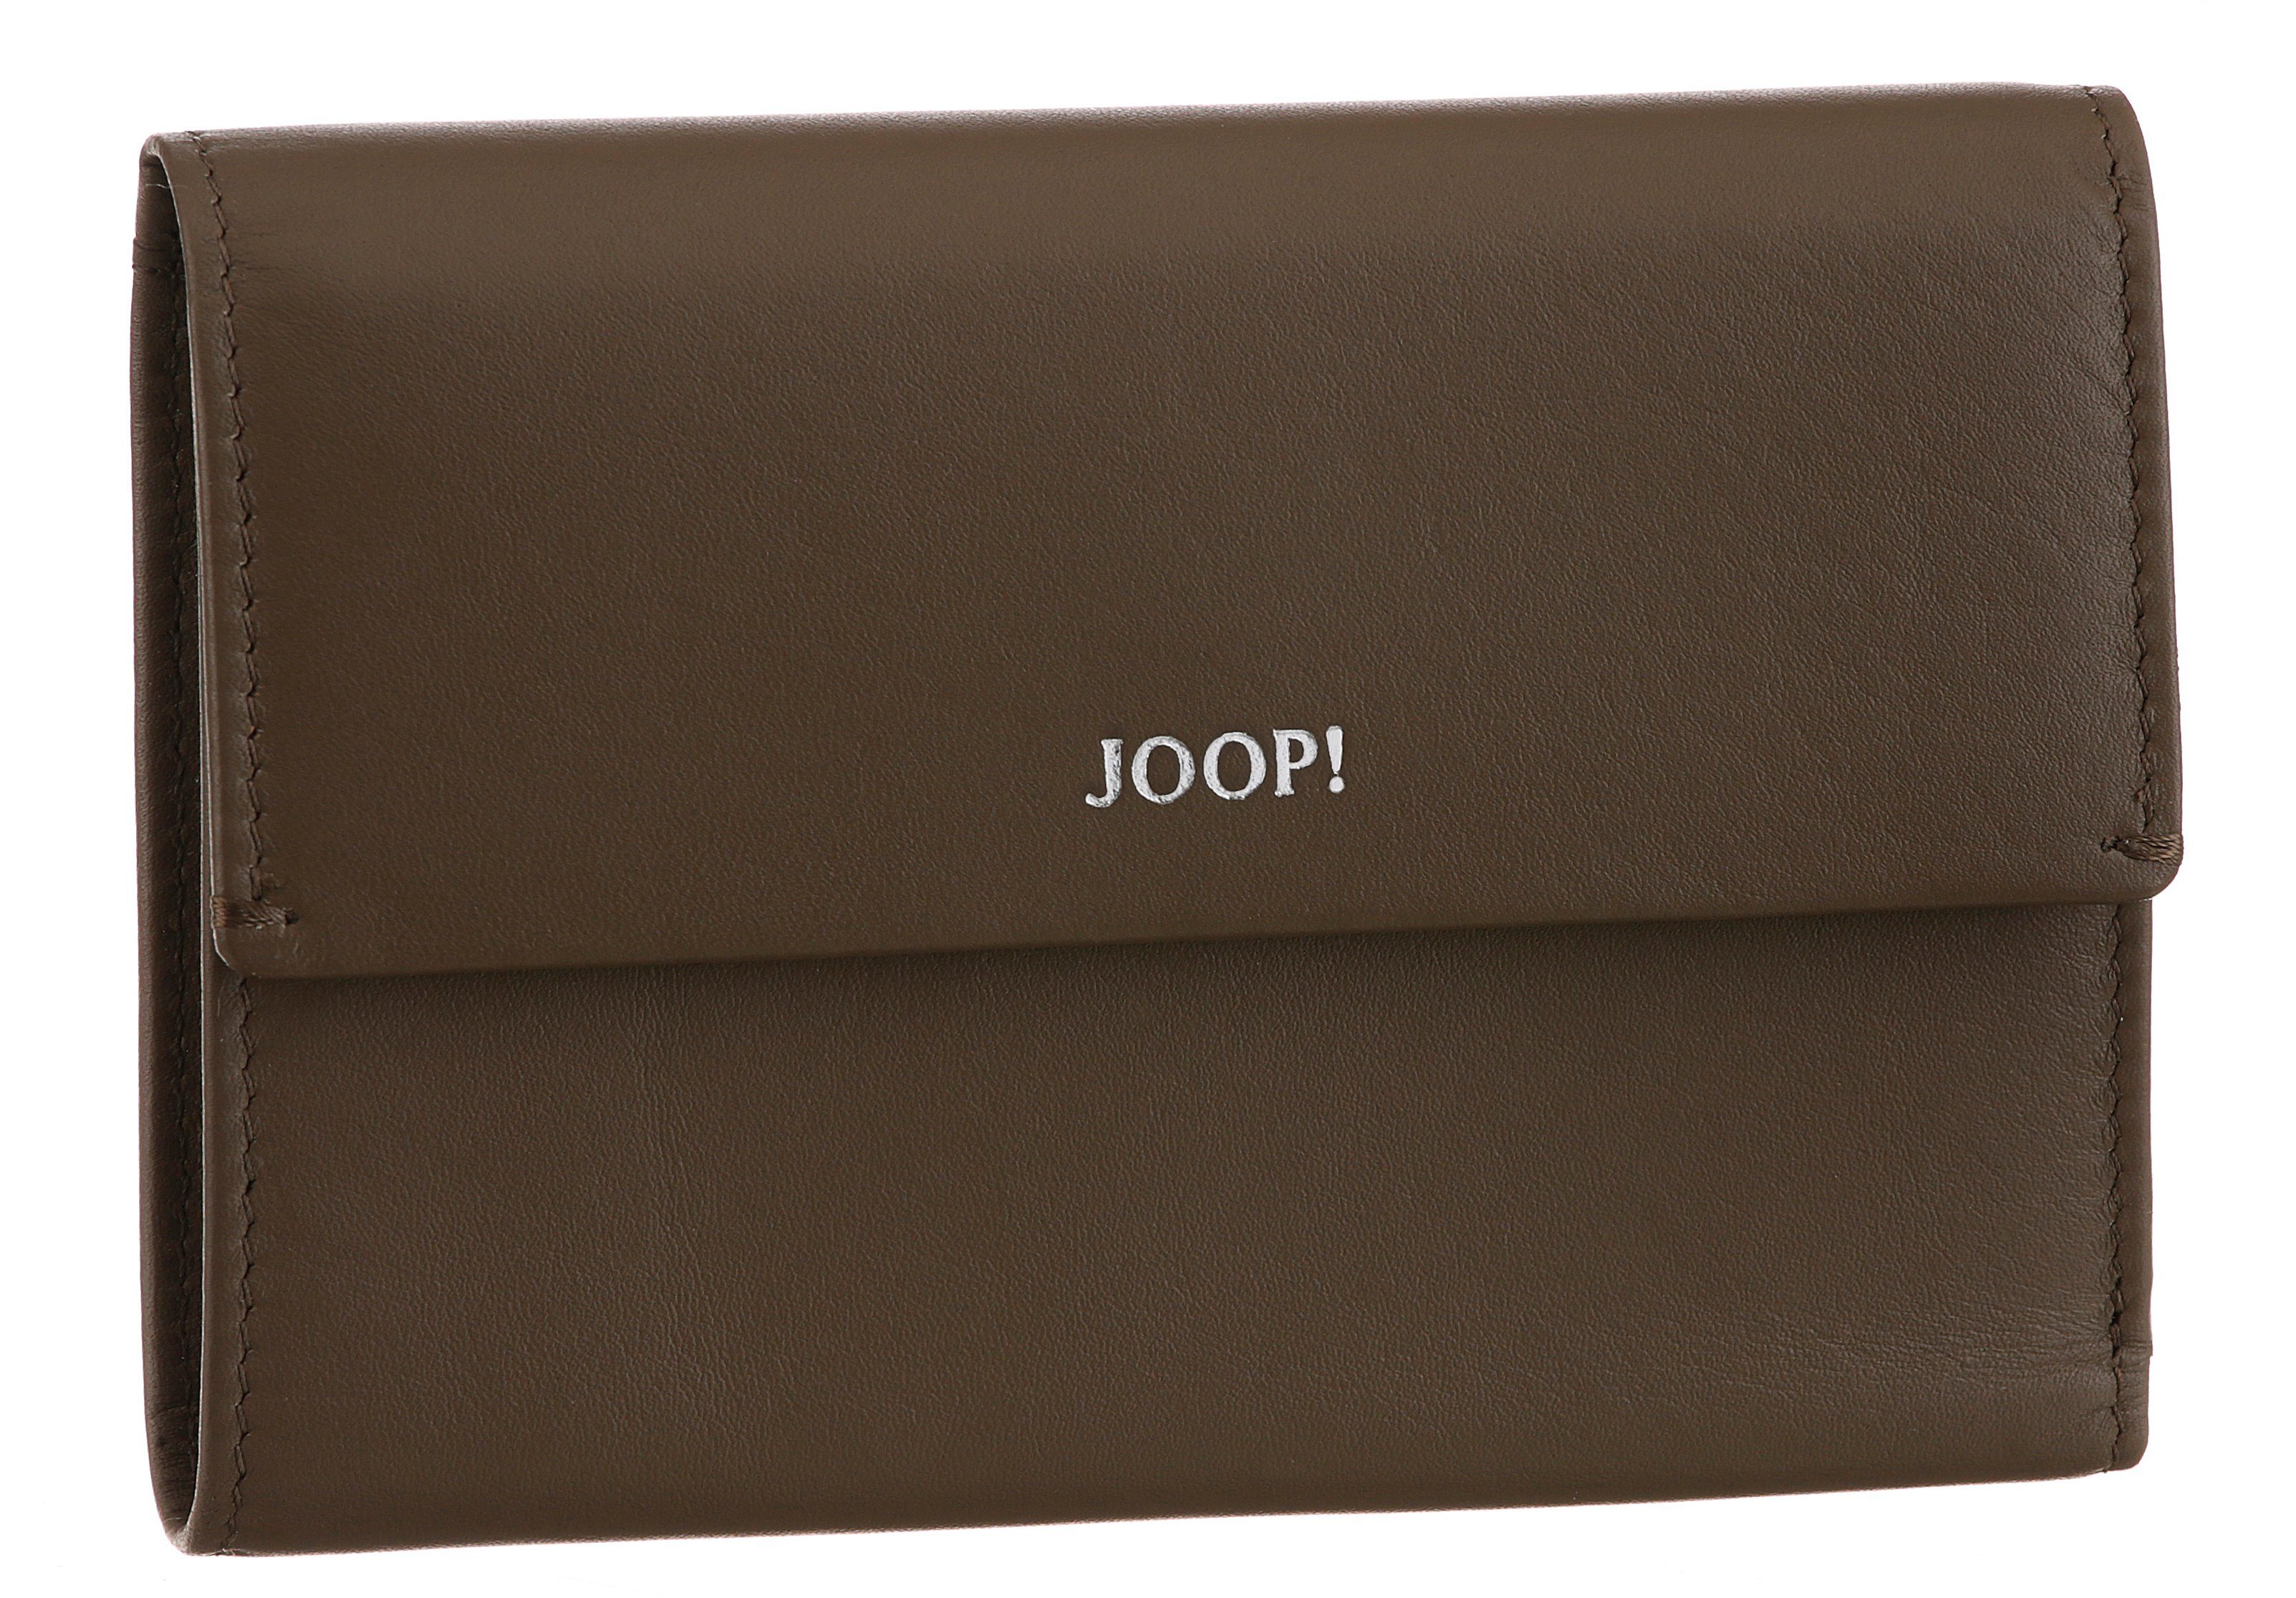 Joop! Geldbörse sofisticato 1.0 purse mh10f, schlichtem cosma Design in dunkelbraun